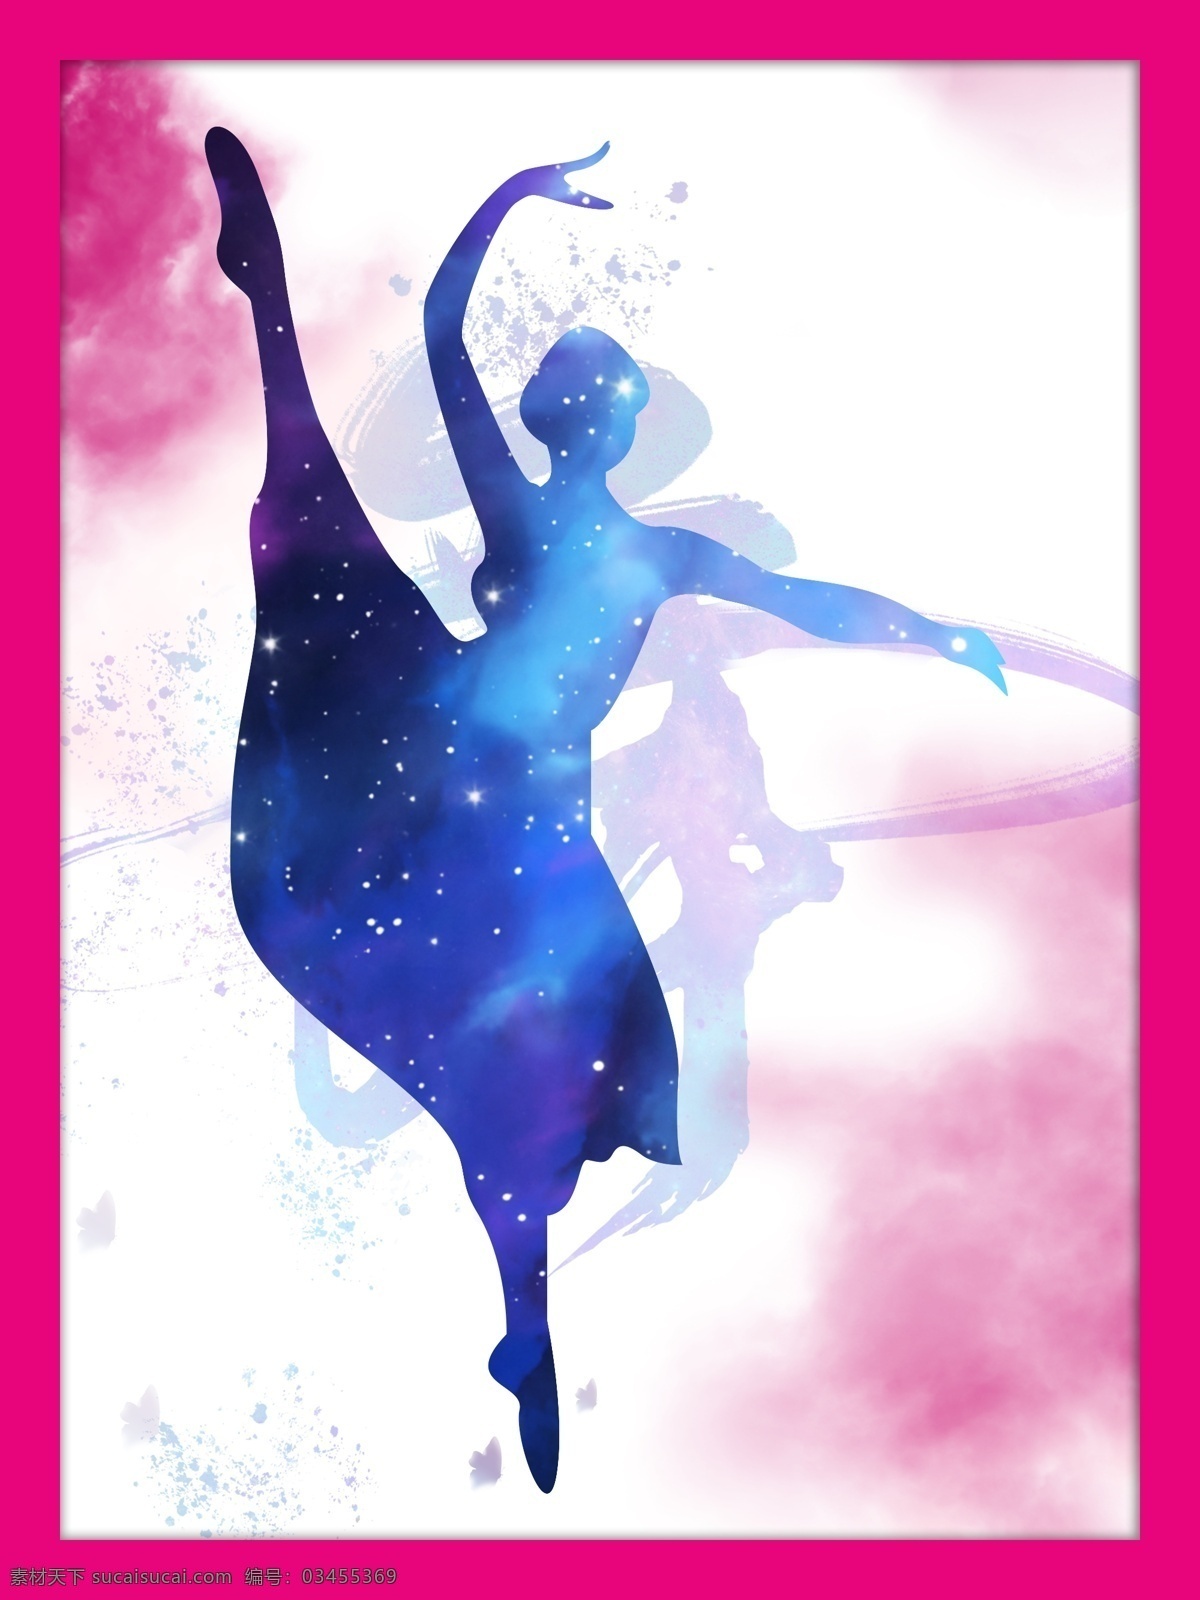 舞蹈室 宣传画 芭蕾舞图形 矢量图形 舞蹈 舞者 女 墙体挂画 宣传海报 室外广告设计